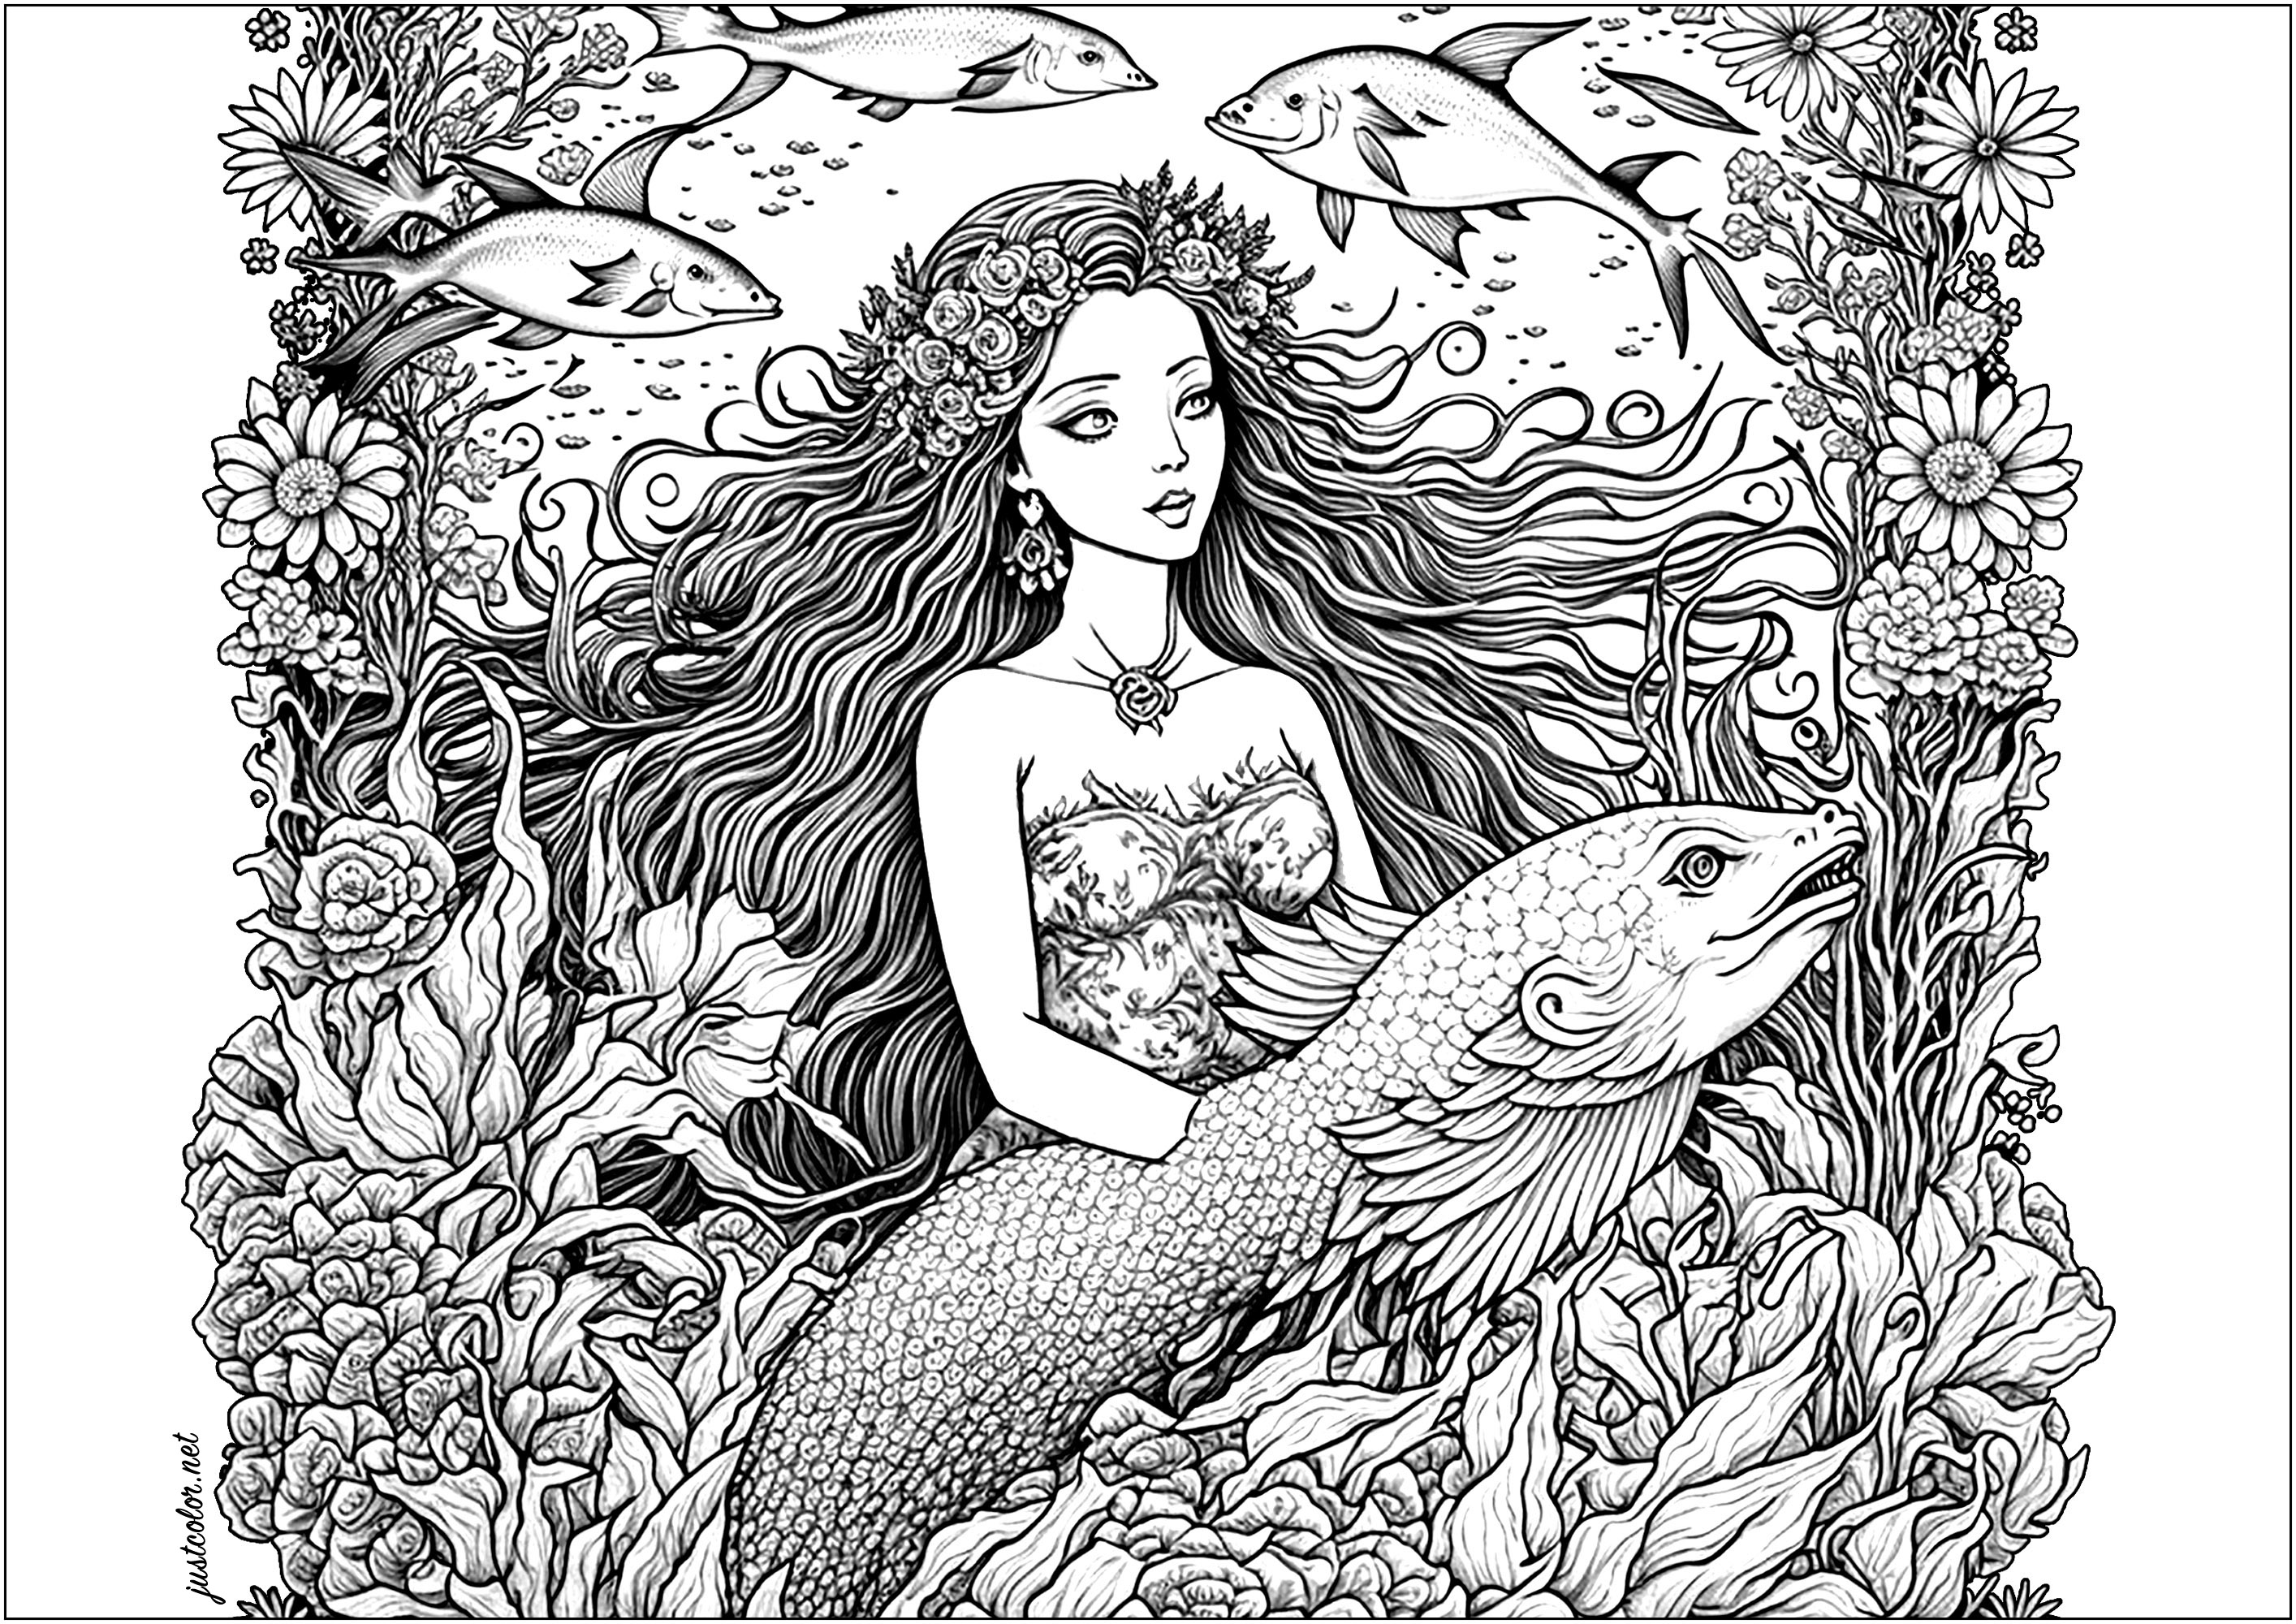 Sirène nageant gracieusement dans l'océan, avec un gros poisson. Elle est belle, ses longs cheveux flottant derrière elle, avec son ami poisson nageant à ses côtés. Ensemble, ils ont exploré les profondeurs de la mer, découvrant des choses nouvelles et passionnantes, Artiste : IAsabelle